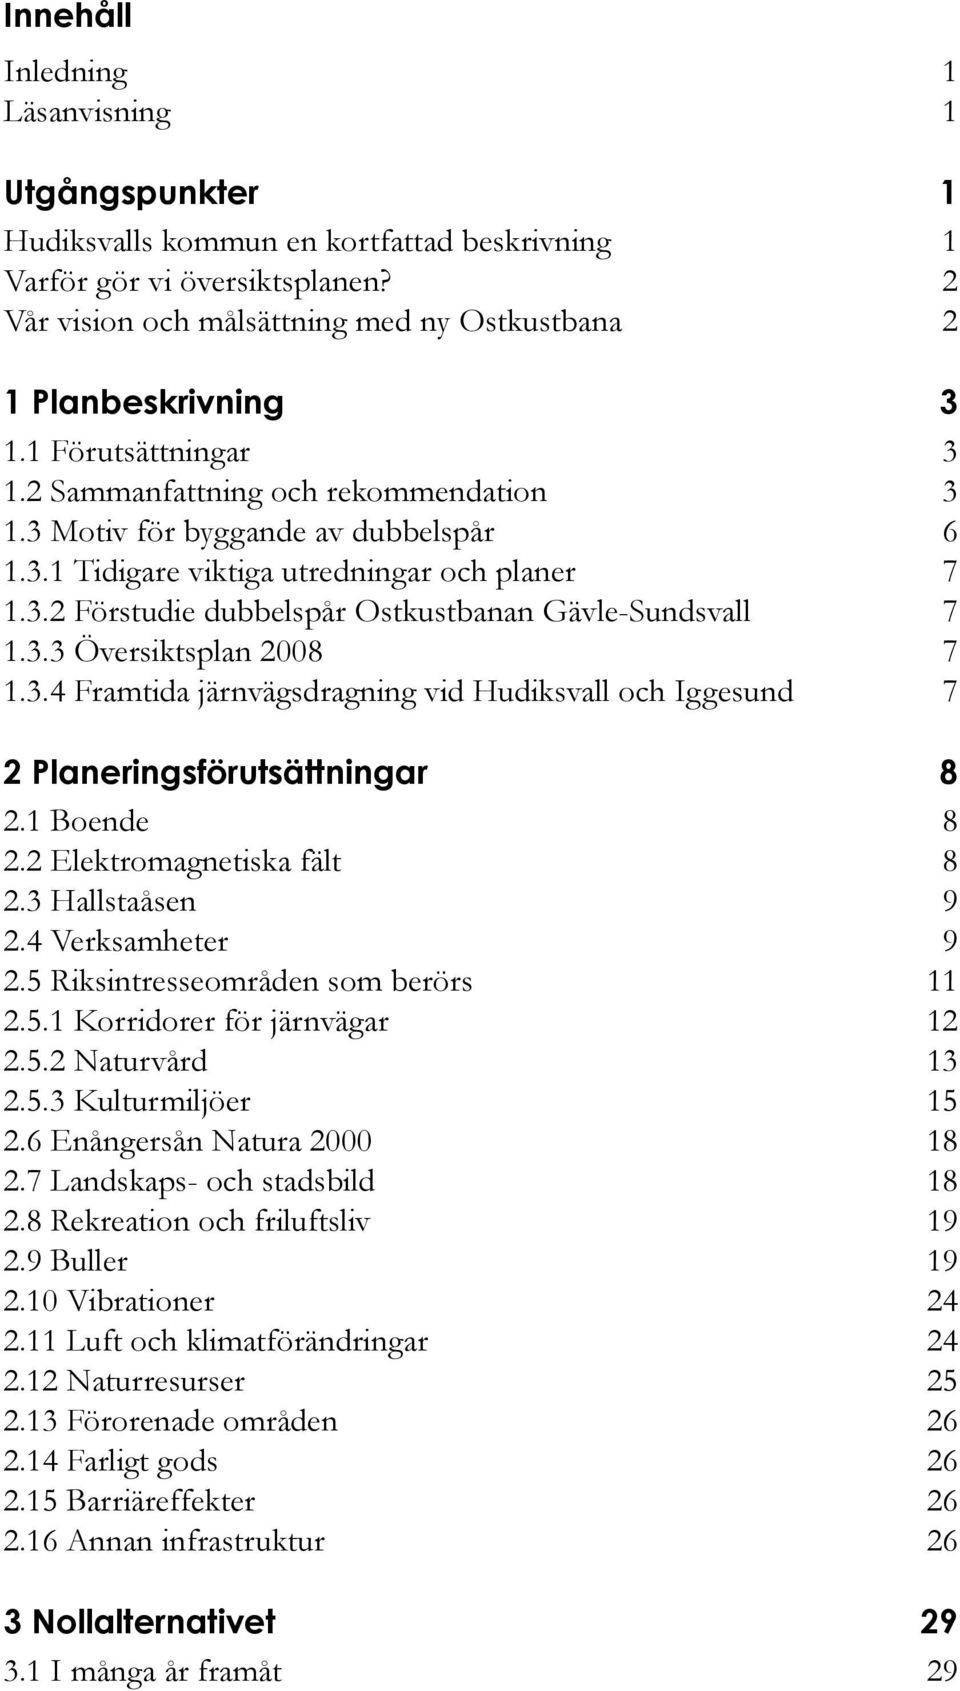 3.2 Förstudie dubbelspår Ostkustbanan Gävle-Sundsvall 7 1.3.3 Översiktsplan 2008 7 1.3.4 Framtida järnvägsdragning vid Hudiksvall och Iggesund 7 2 Planeringsförutsättningar 8 2.1 Boende 8 2.